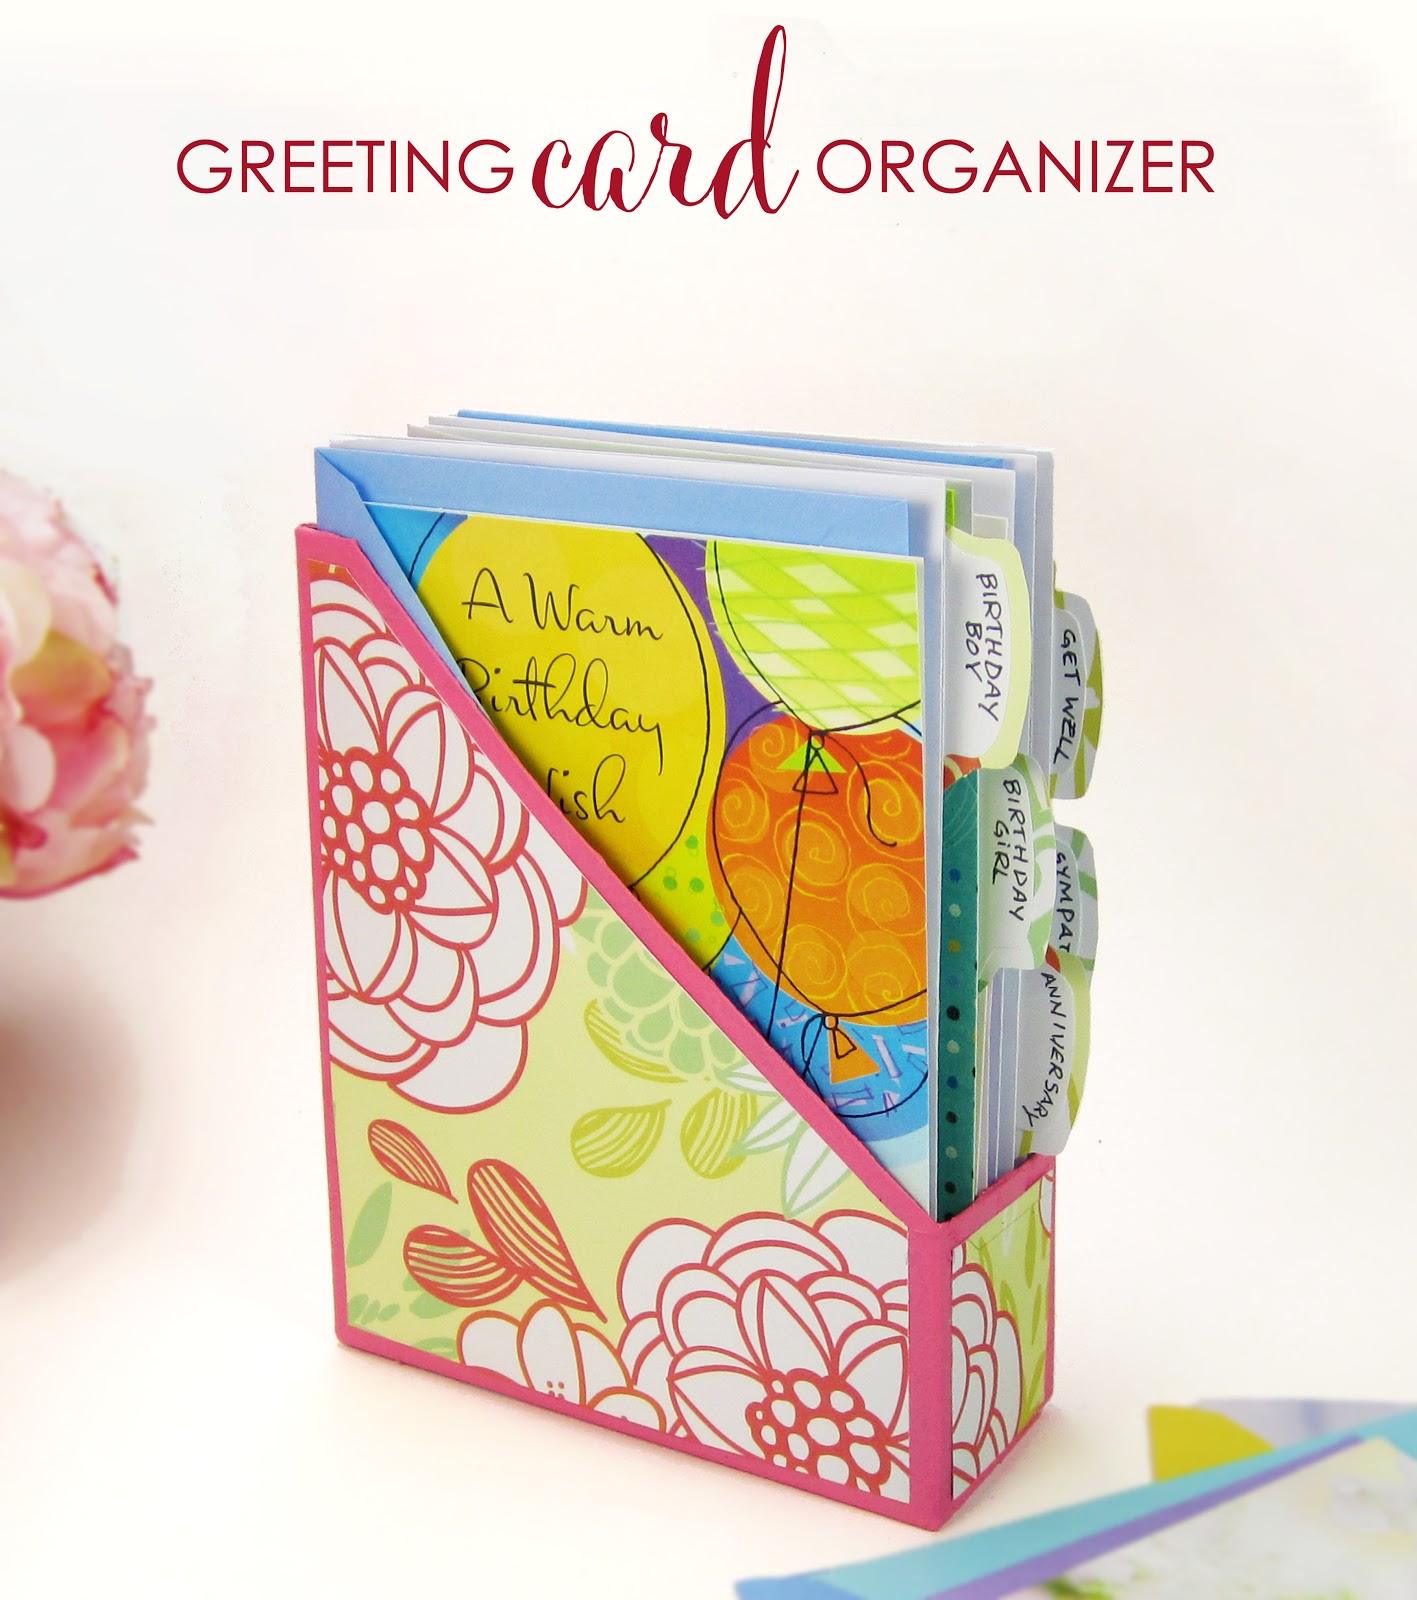 A DIY Greeting Card Organizer